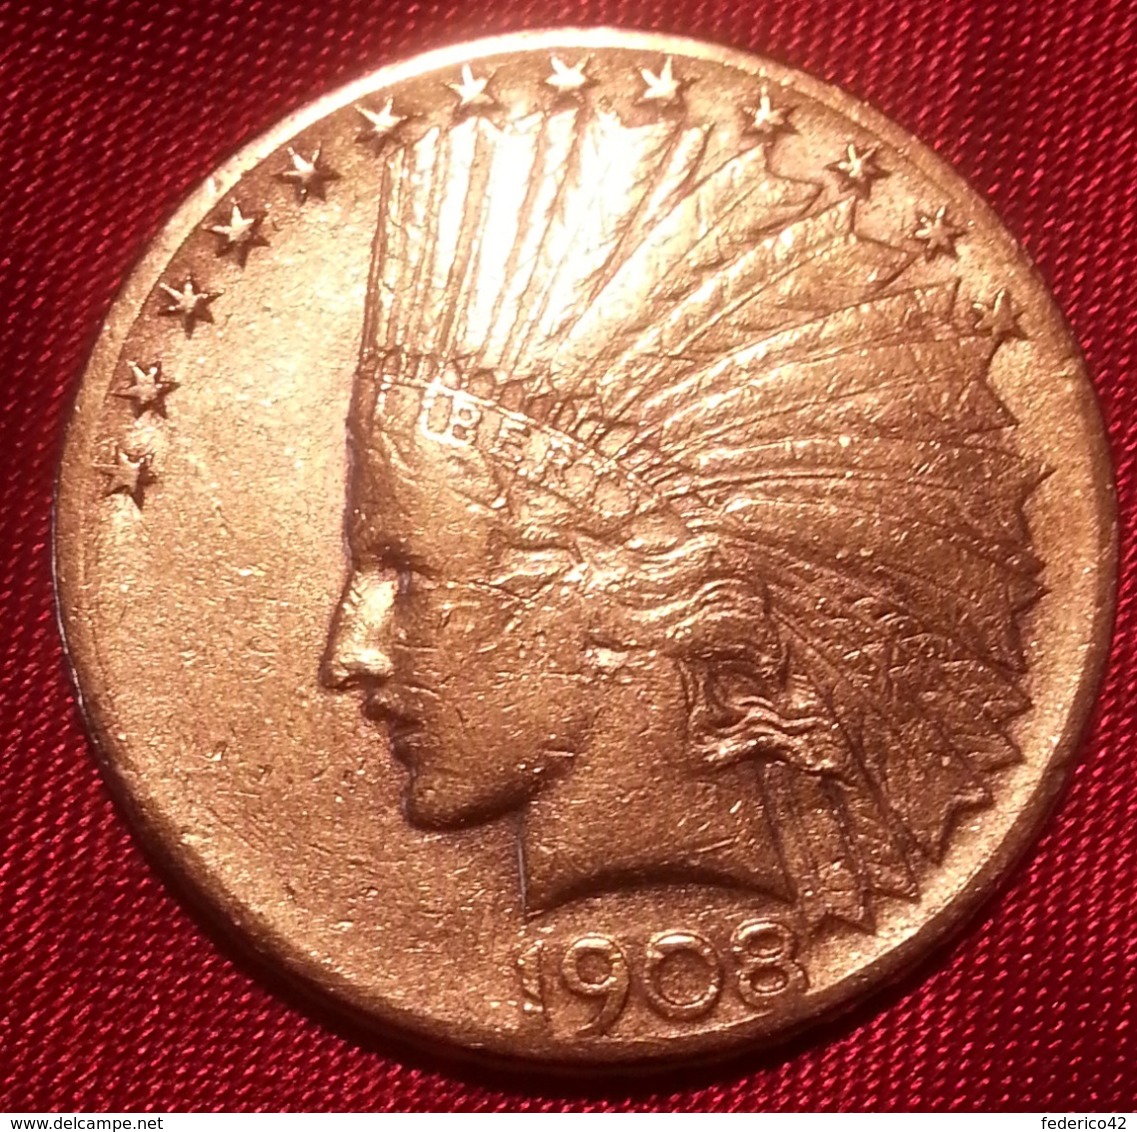 ORO STATI UNITI AMERICA RARO 10 DOLLARI INDIANO 1908 SEGNO DI ZECCA "S"  SPL - 10$ - Eagle - 1907-1933: Indian Head